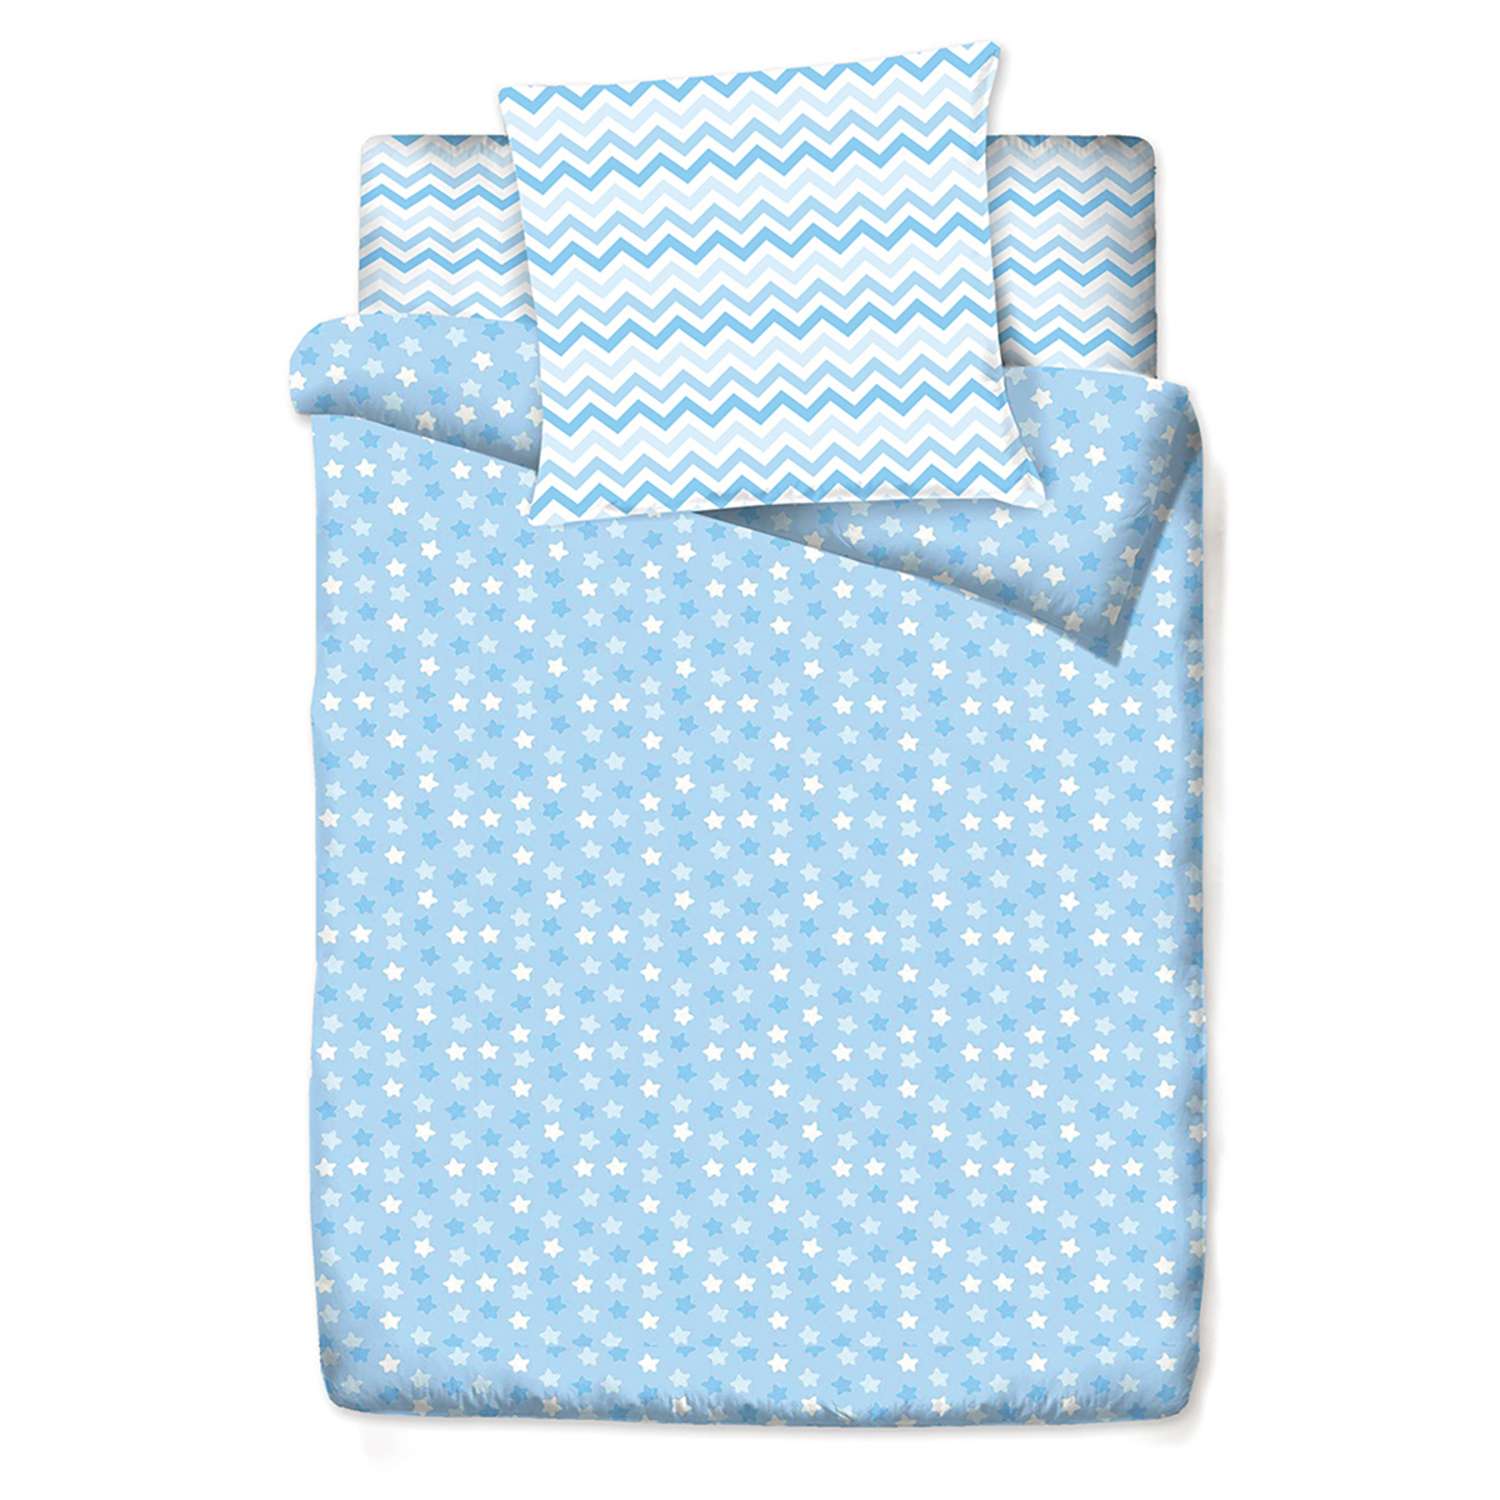 Комплект постельного белья Маленькая соня Цветные сны Голубой 3 предмета м100.05.04 - фото 2